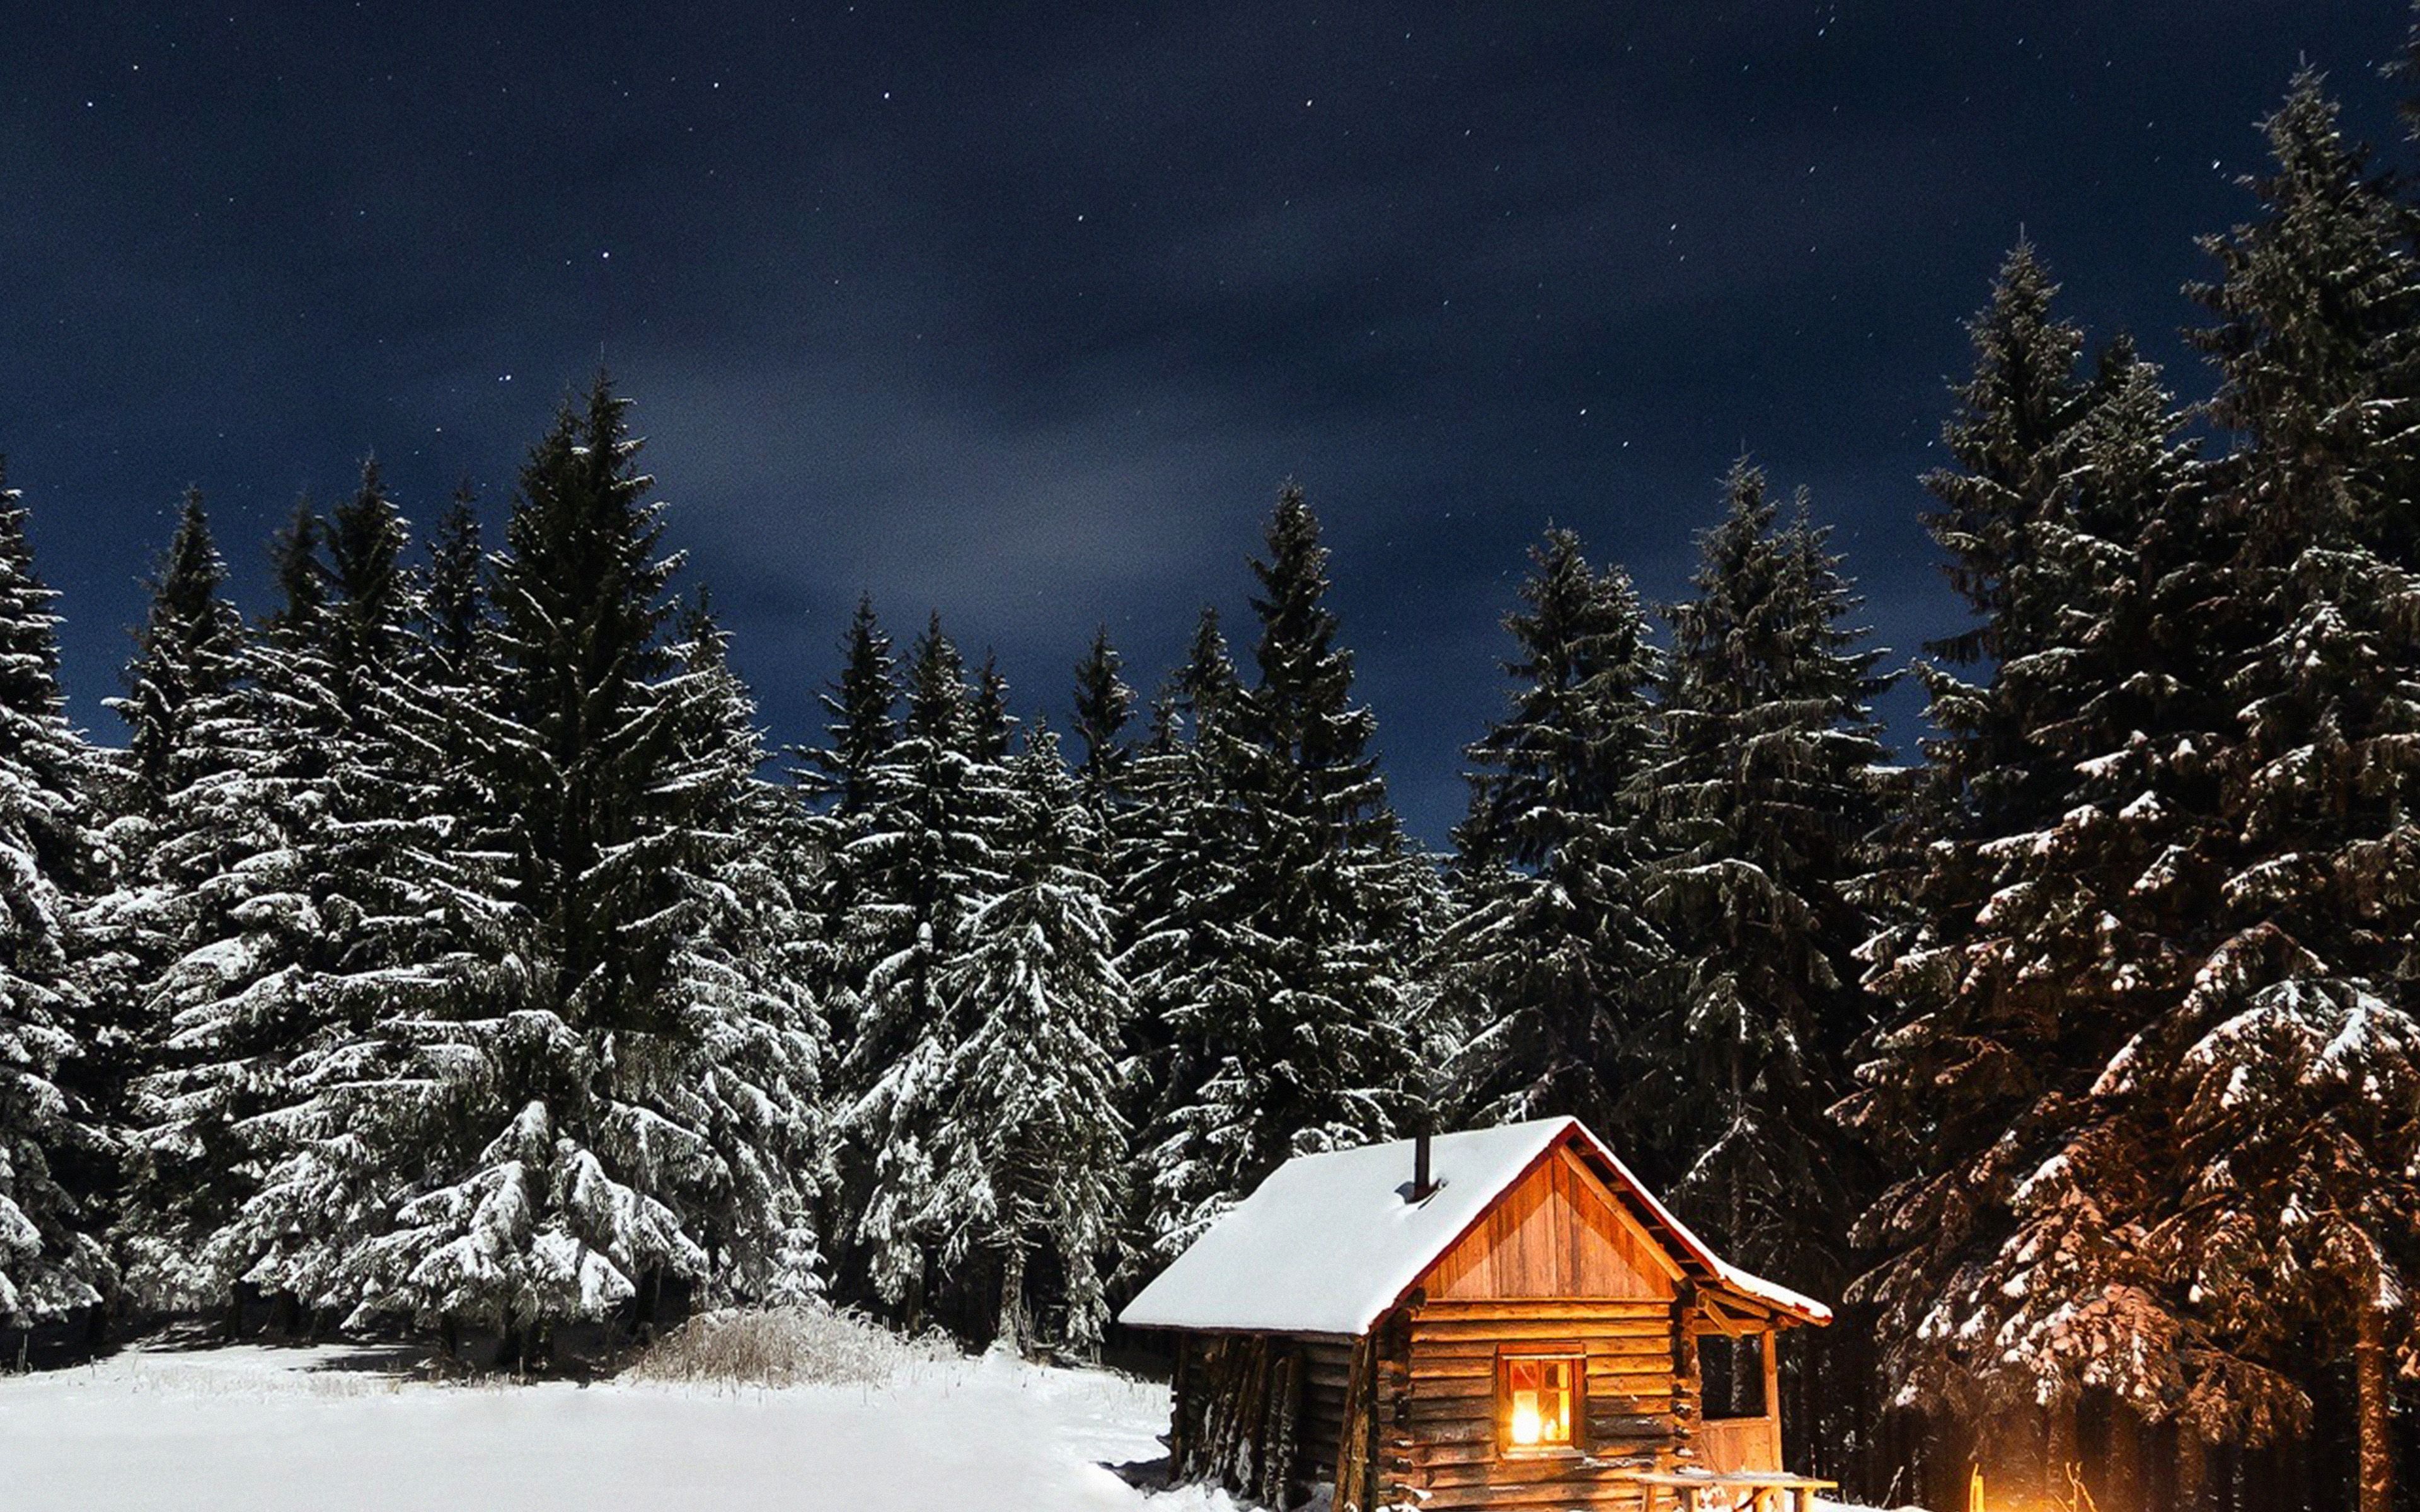 Winter House Night Sky Christmas